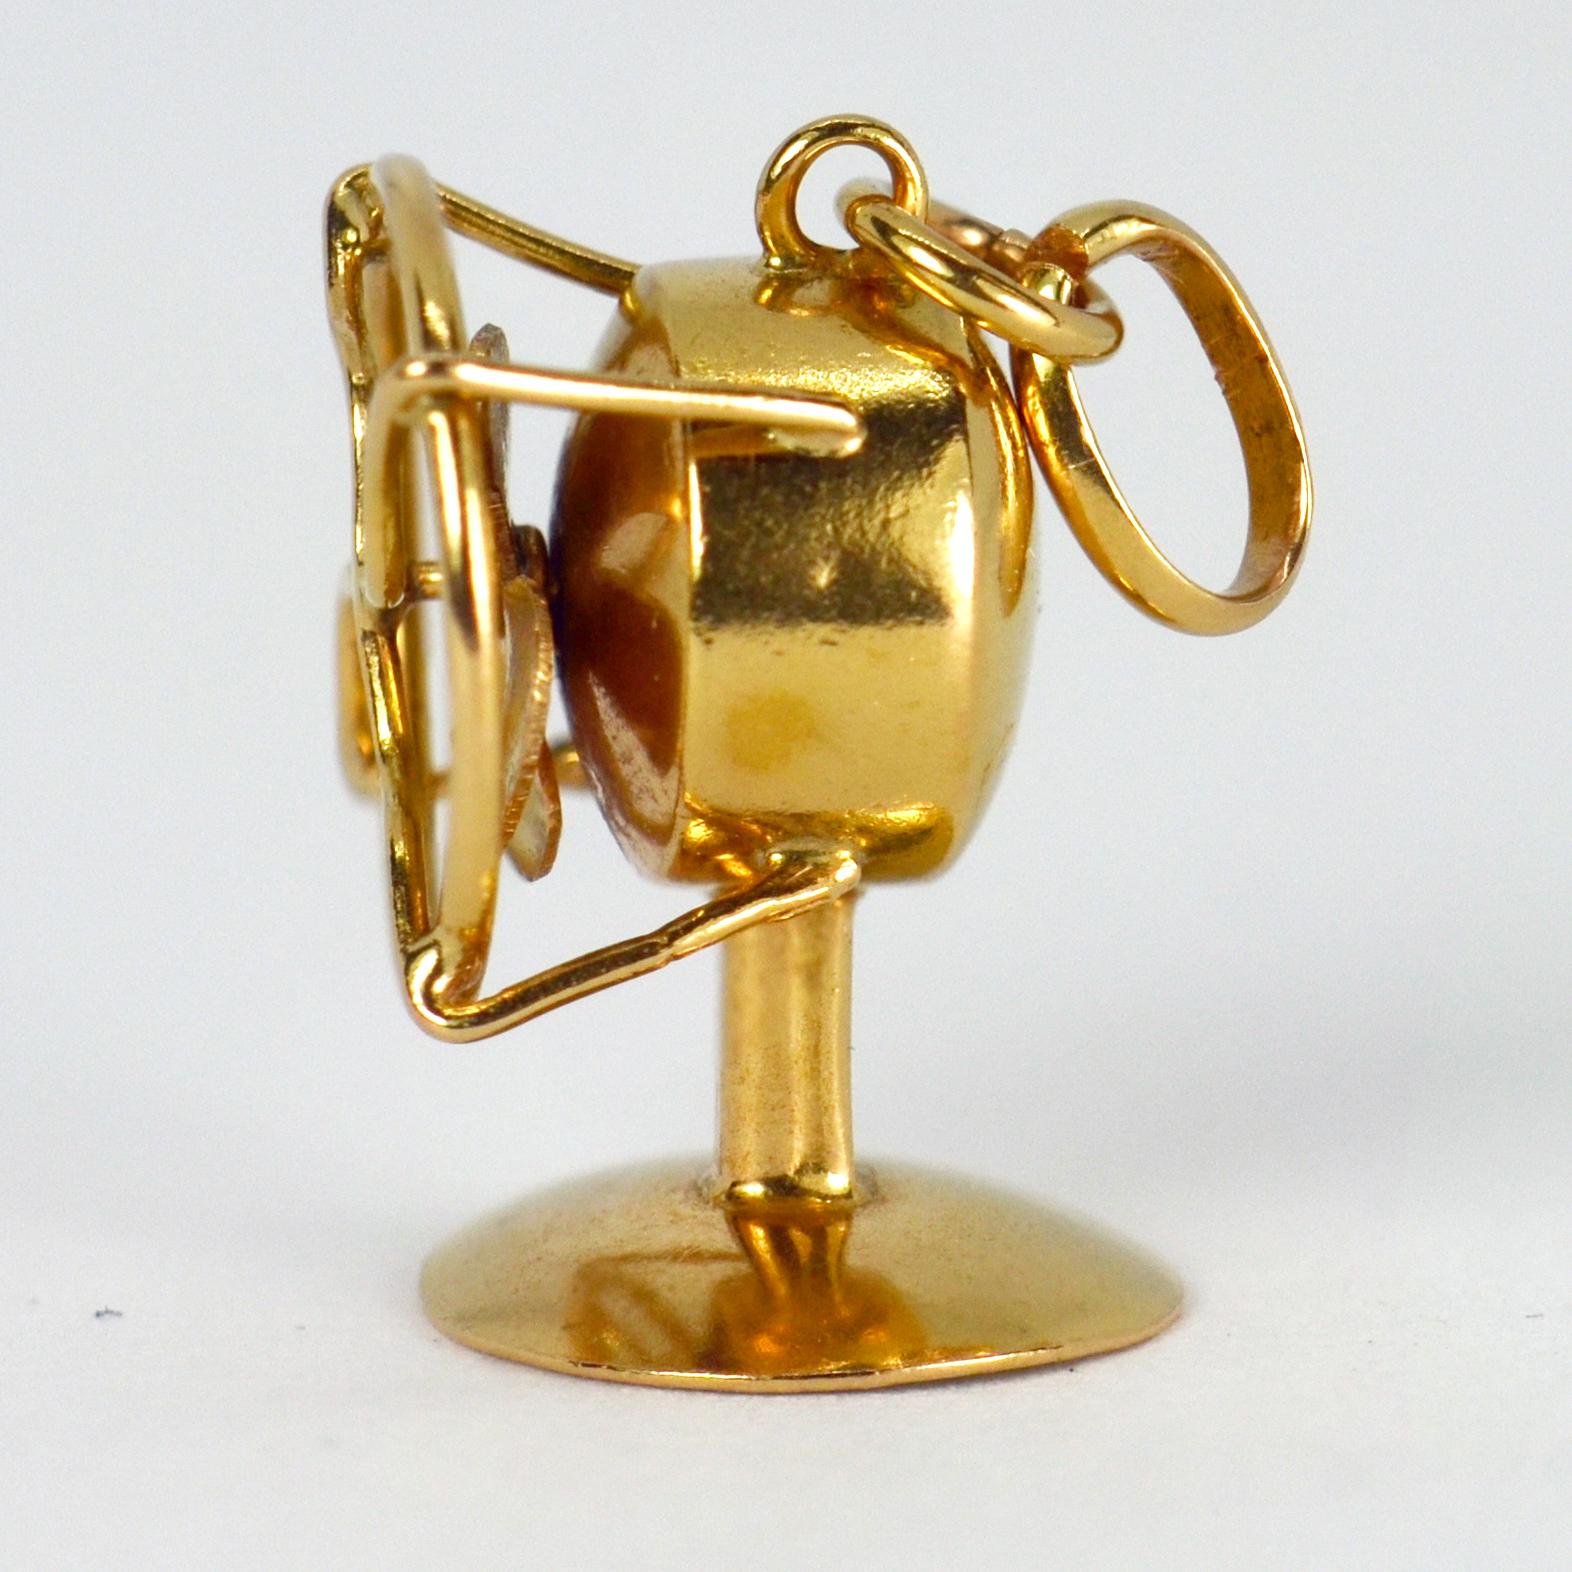 Ein Anhänger aus 18 Karat (18K) Gelbgold in Form eines mechanischen Tischventilators mit rotierenden Flügeln. Nicht gestempelt, aber auf 18 Karat Gold getestet. 

Abmessungen: 1.6 x 1,15 x 1 cm
Gewicht: 1,93 Gramm
